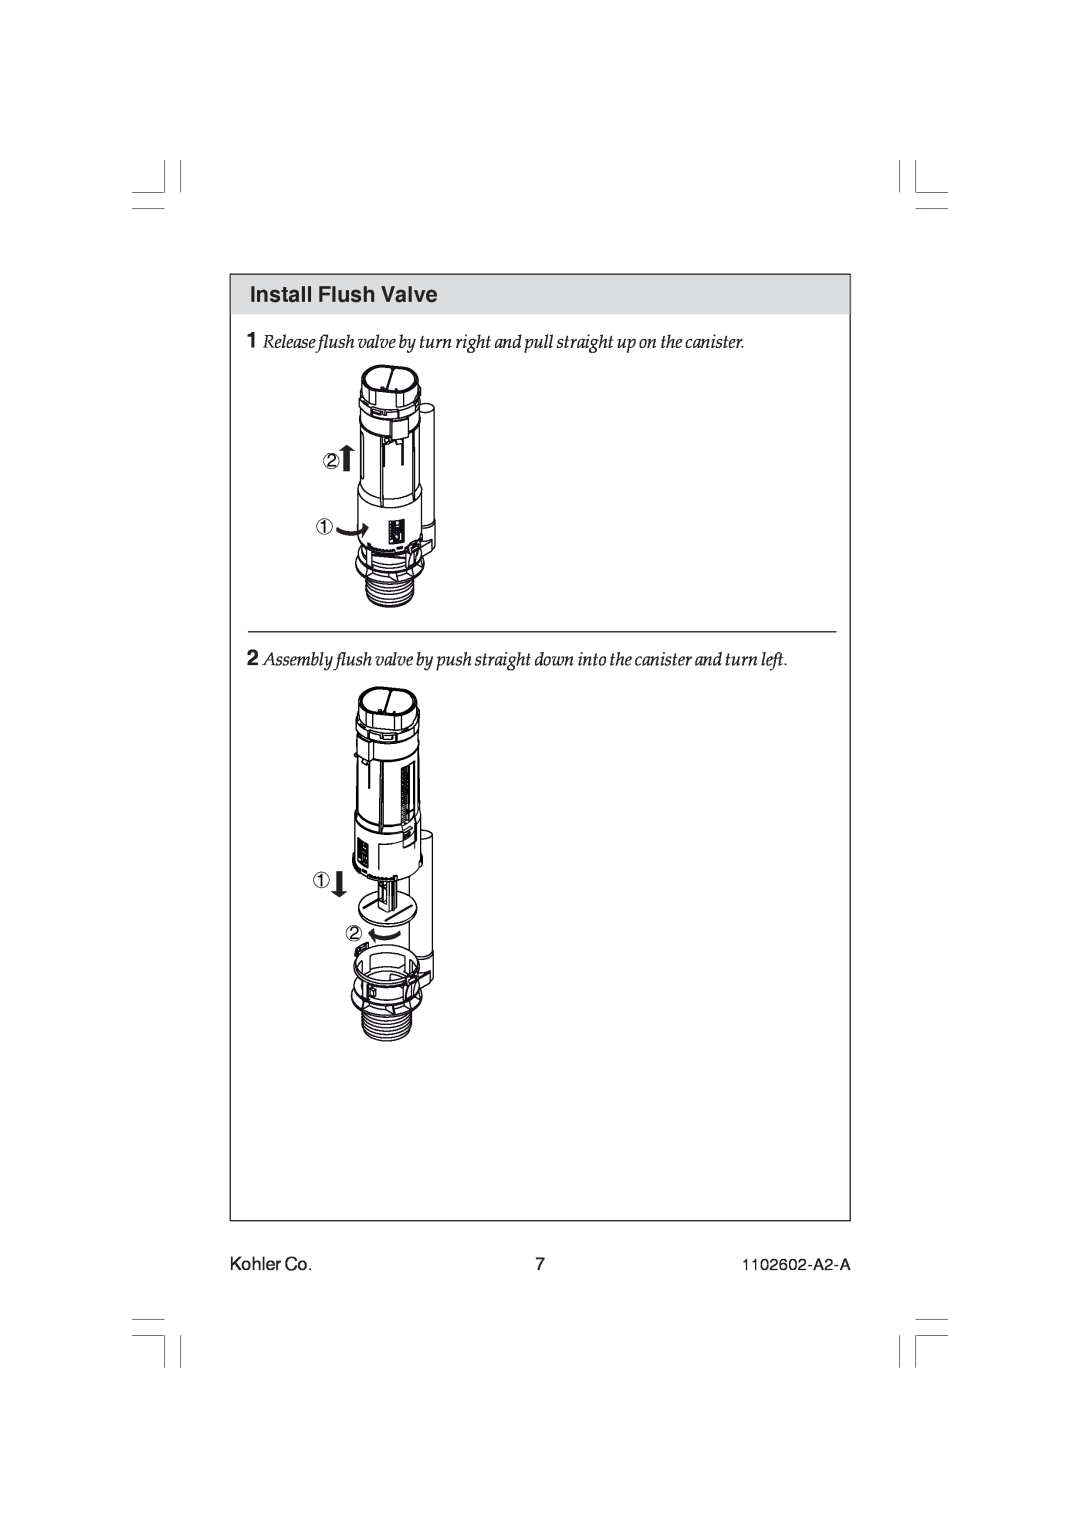 Kohler K-3735, K-19896, K-3736, K-4346 manual Install Flush Valve, Kohler Co 